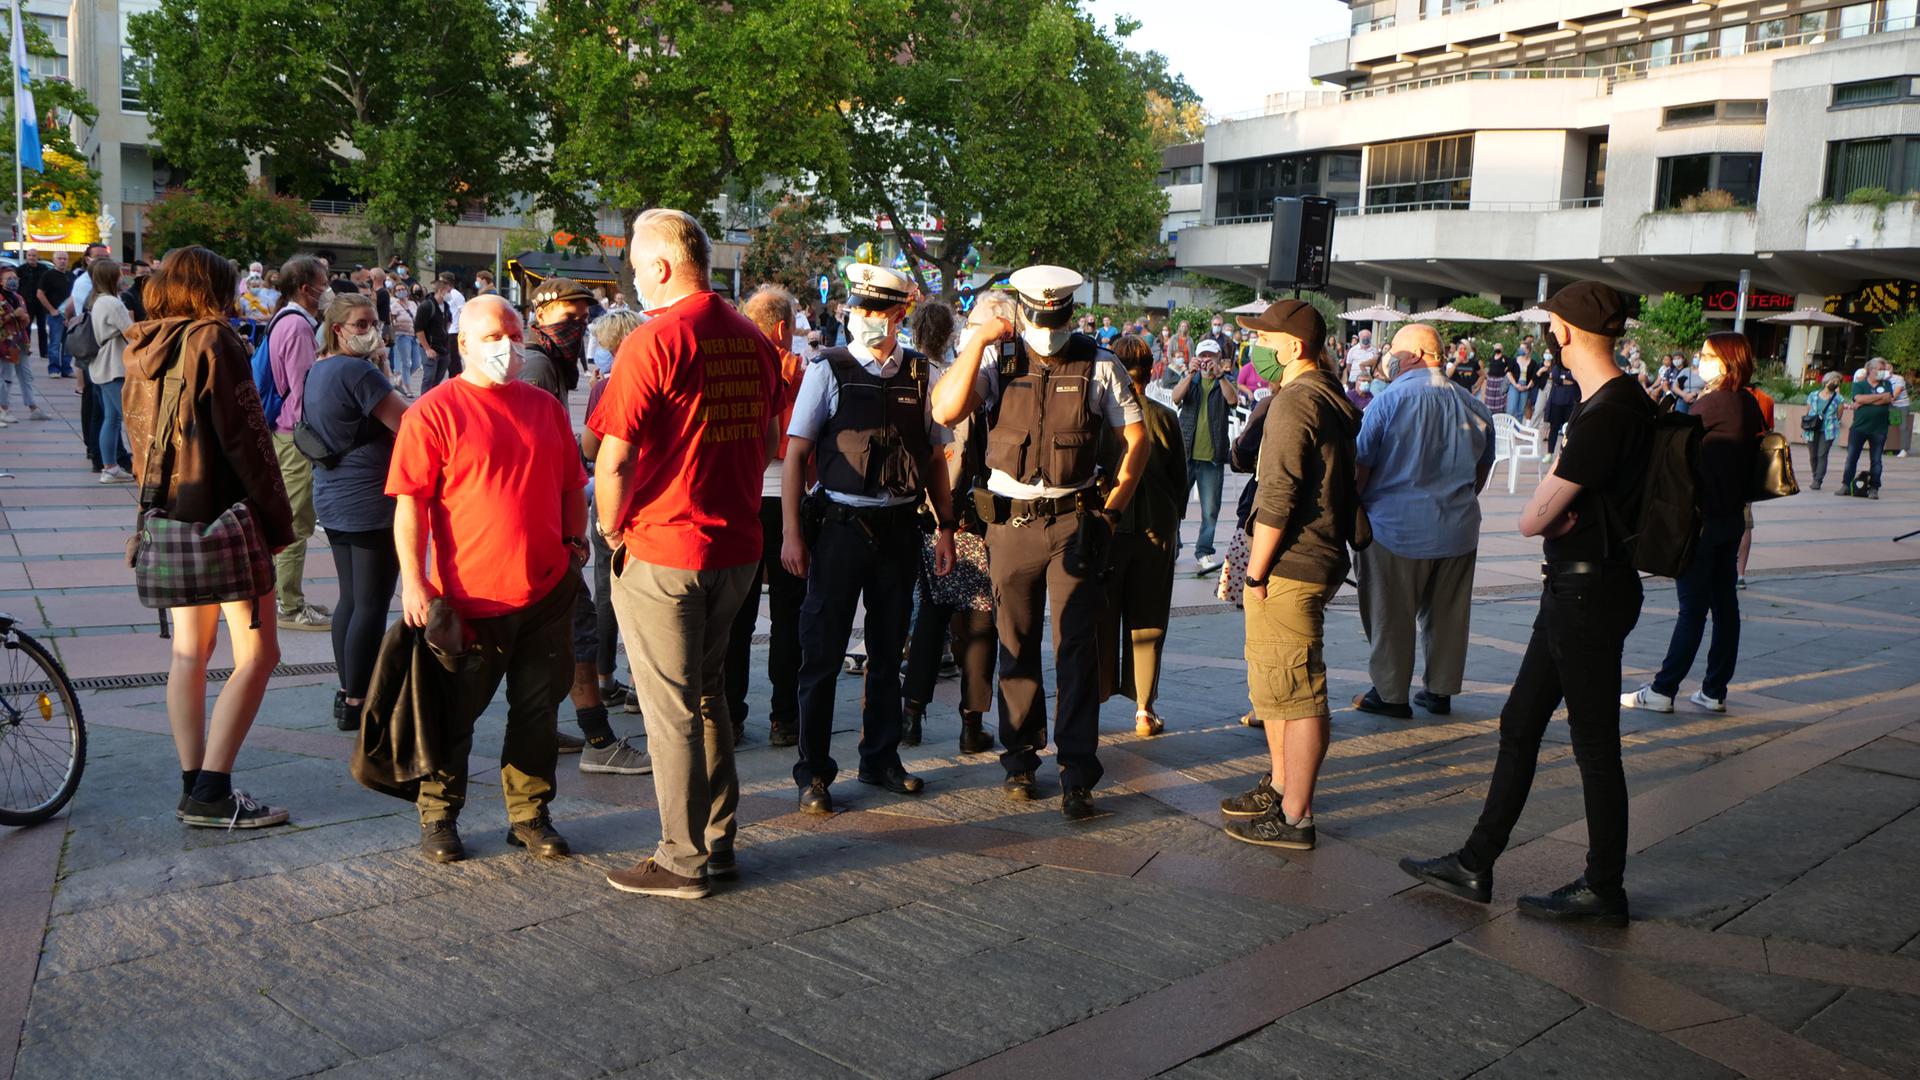 Kundgebung zur Lage der Flüchtlinge in Lesbos vor dem Rathaus Pforzheim mit Polizei und zwei Mitglieder von „Ein Herz für Deutschland“ in roten T-Shirts, die in Richtung Platz von Kundgebungsteilnehmern abgeschirmt werden. Ralf Fuhrmann blaues Hemd von links